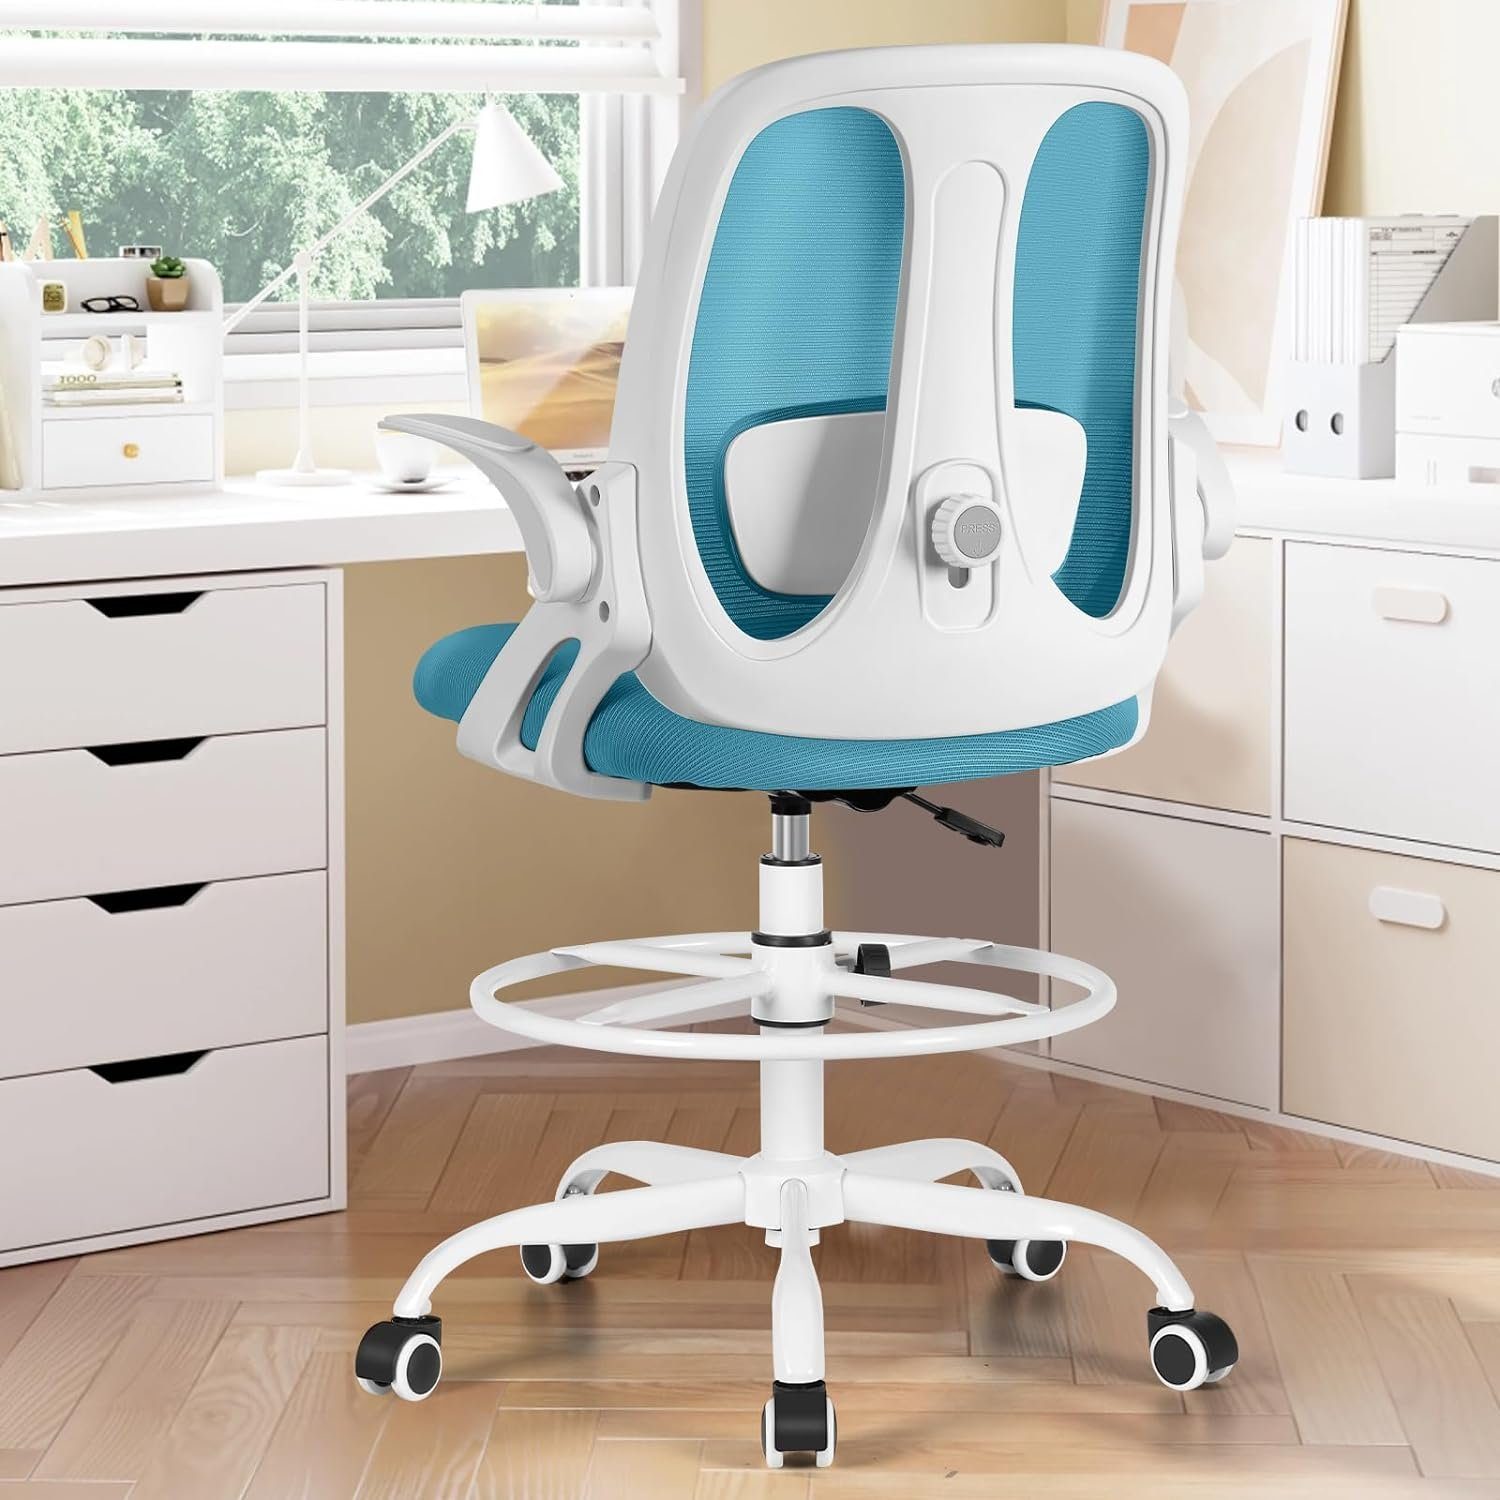 Razzor Bürostuhl (360° Drehstuhl mit Fußstütze, Hoher Arbeitsstuhl aus Netz), Büro,Schreibtischstuhl Ergonomisch Armlehnen,Atmungsaktiv bis zu 110Kg